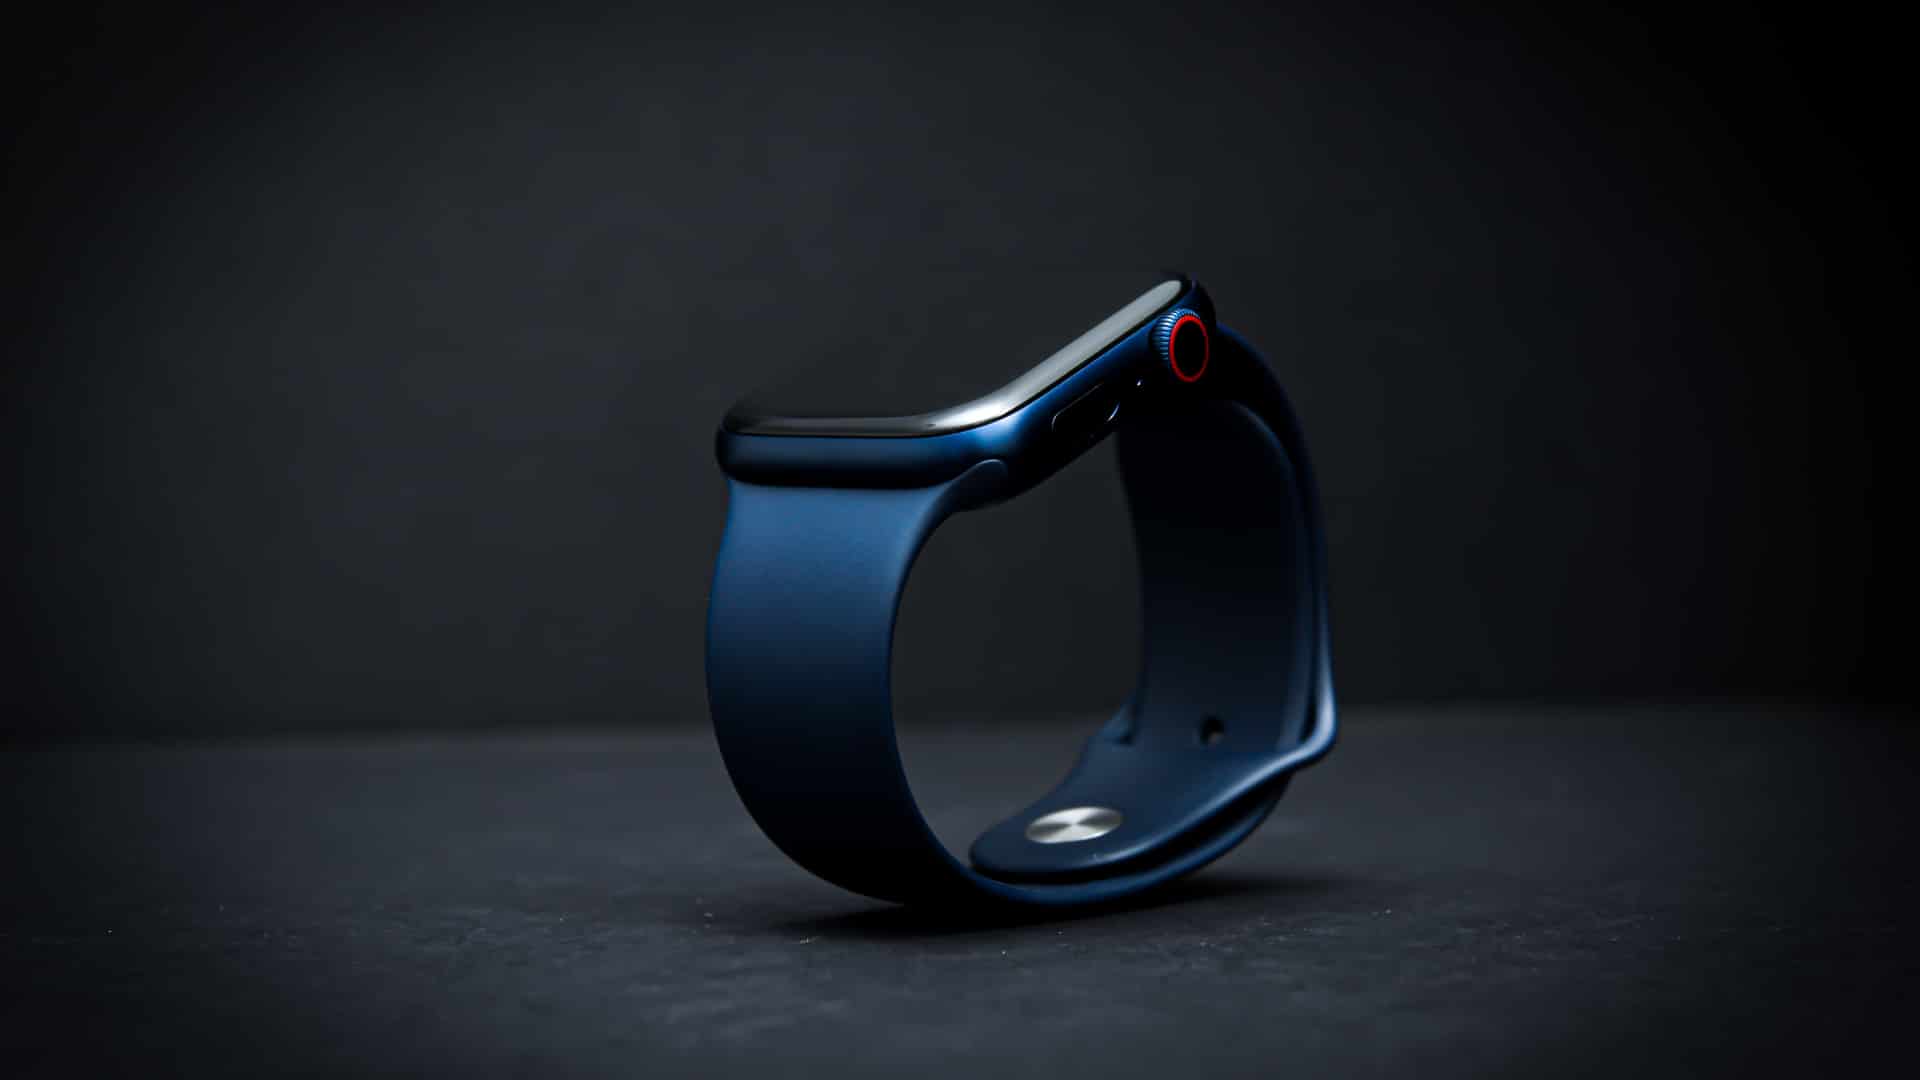 Les rythmes cardiaques irréguliers seraient captés par l'Apple Watch selon une étude.